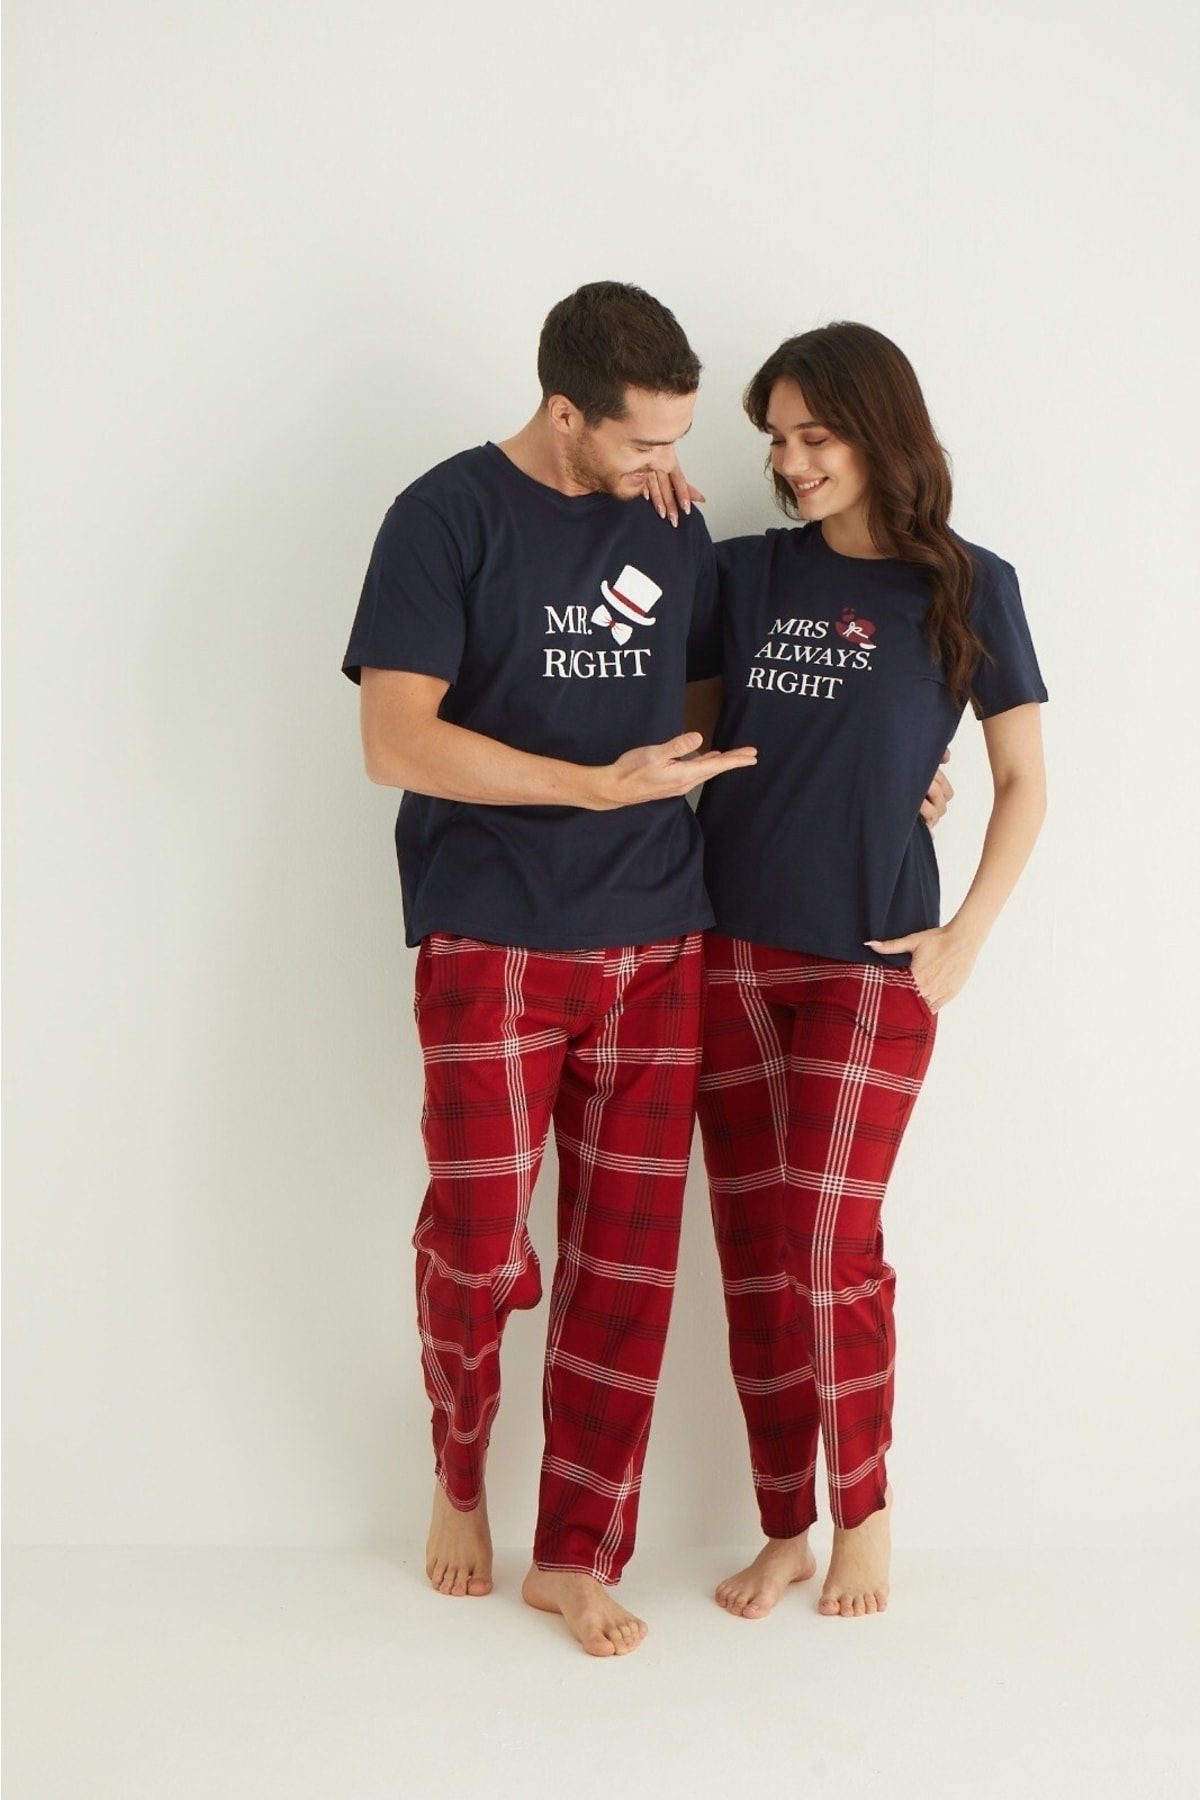 GIZCIY Sevgililer Gününe Özel Tek Ürün Fiyatıdır Kadın Lacivert Sevgili Çift Pijama Takımı